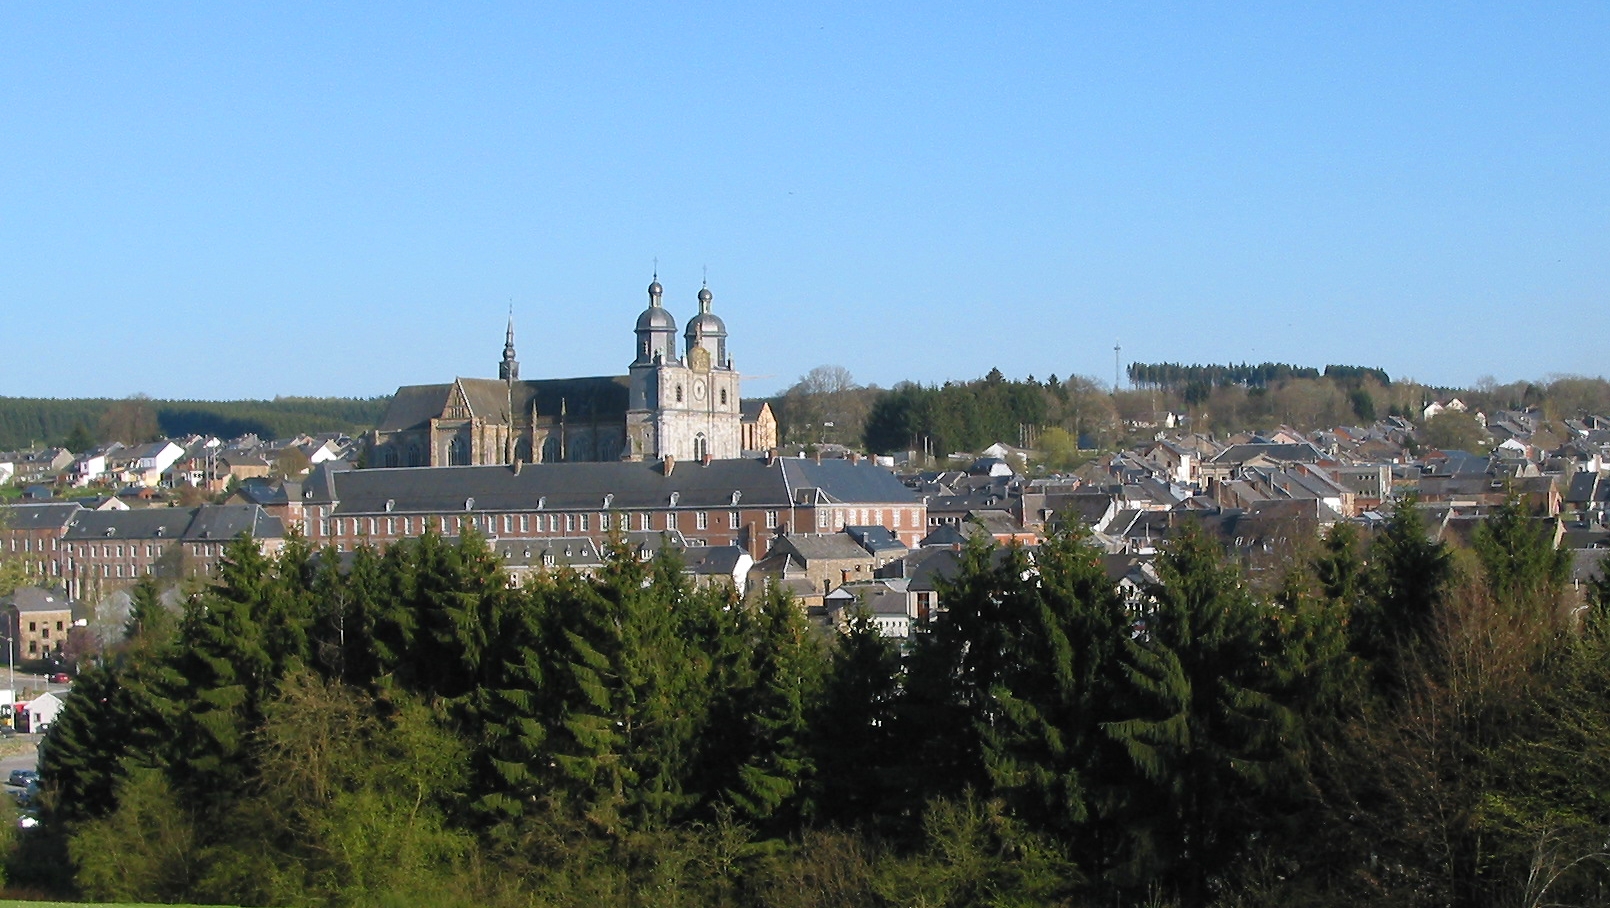 La basilique Saint-Pierre domine la ville de Saint-Hubert dans le sud de la Belgique (photo wikimedia commons  Jean-Pol GRANDMONT CC BY 3.0) 